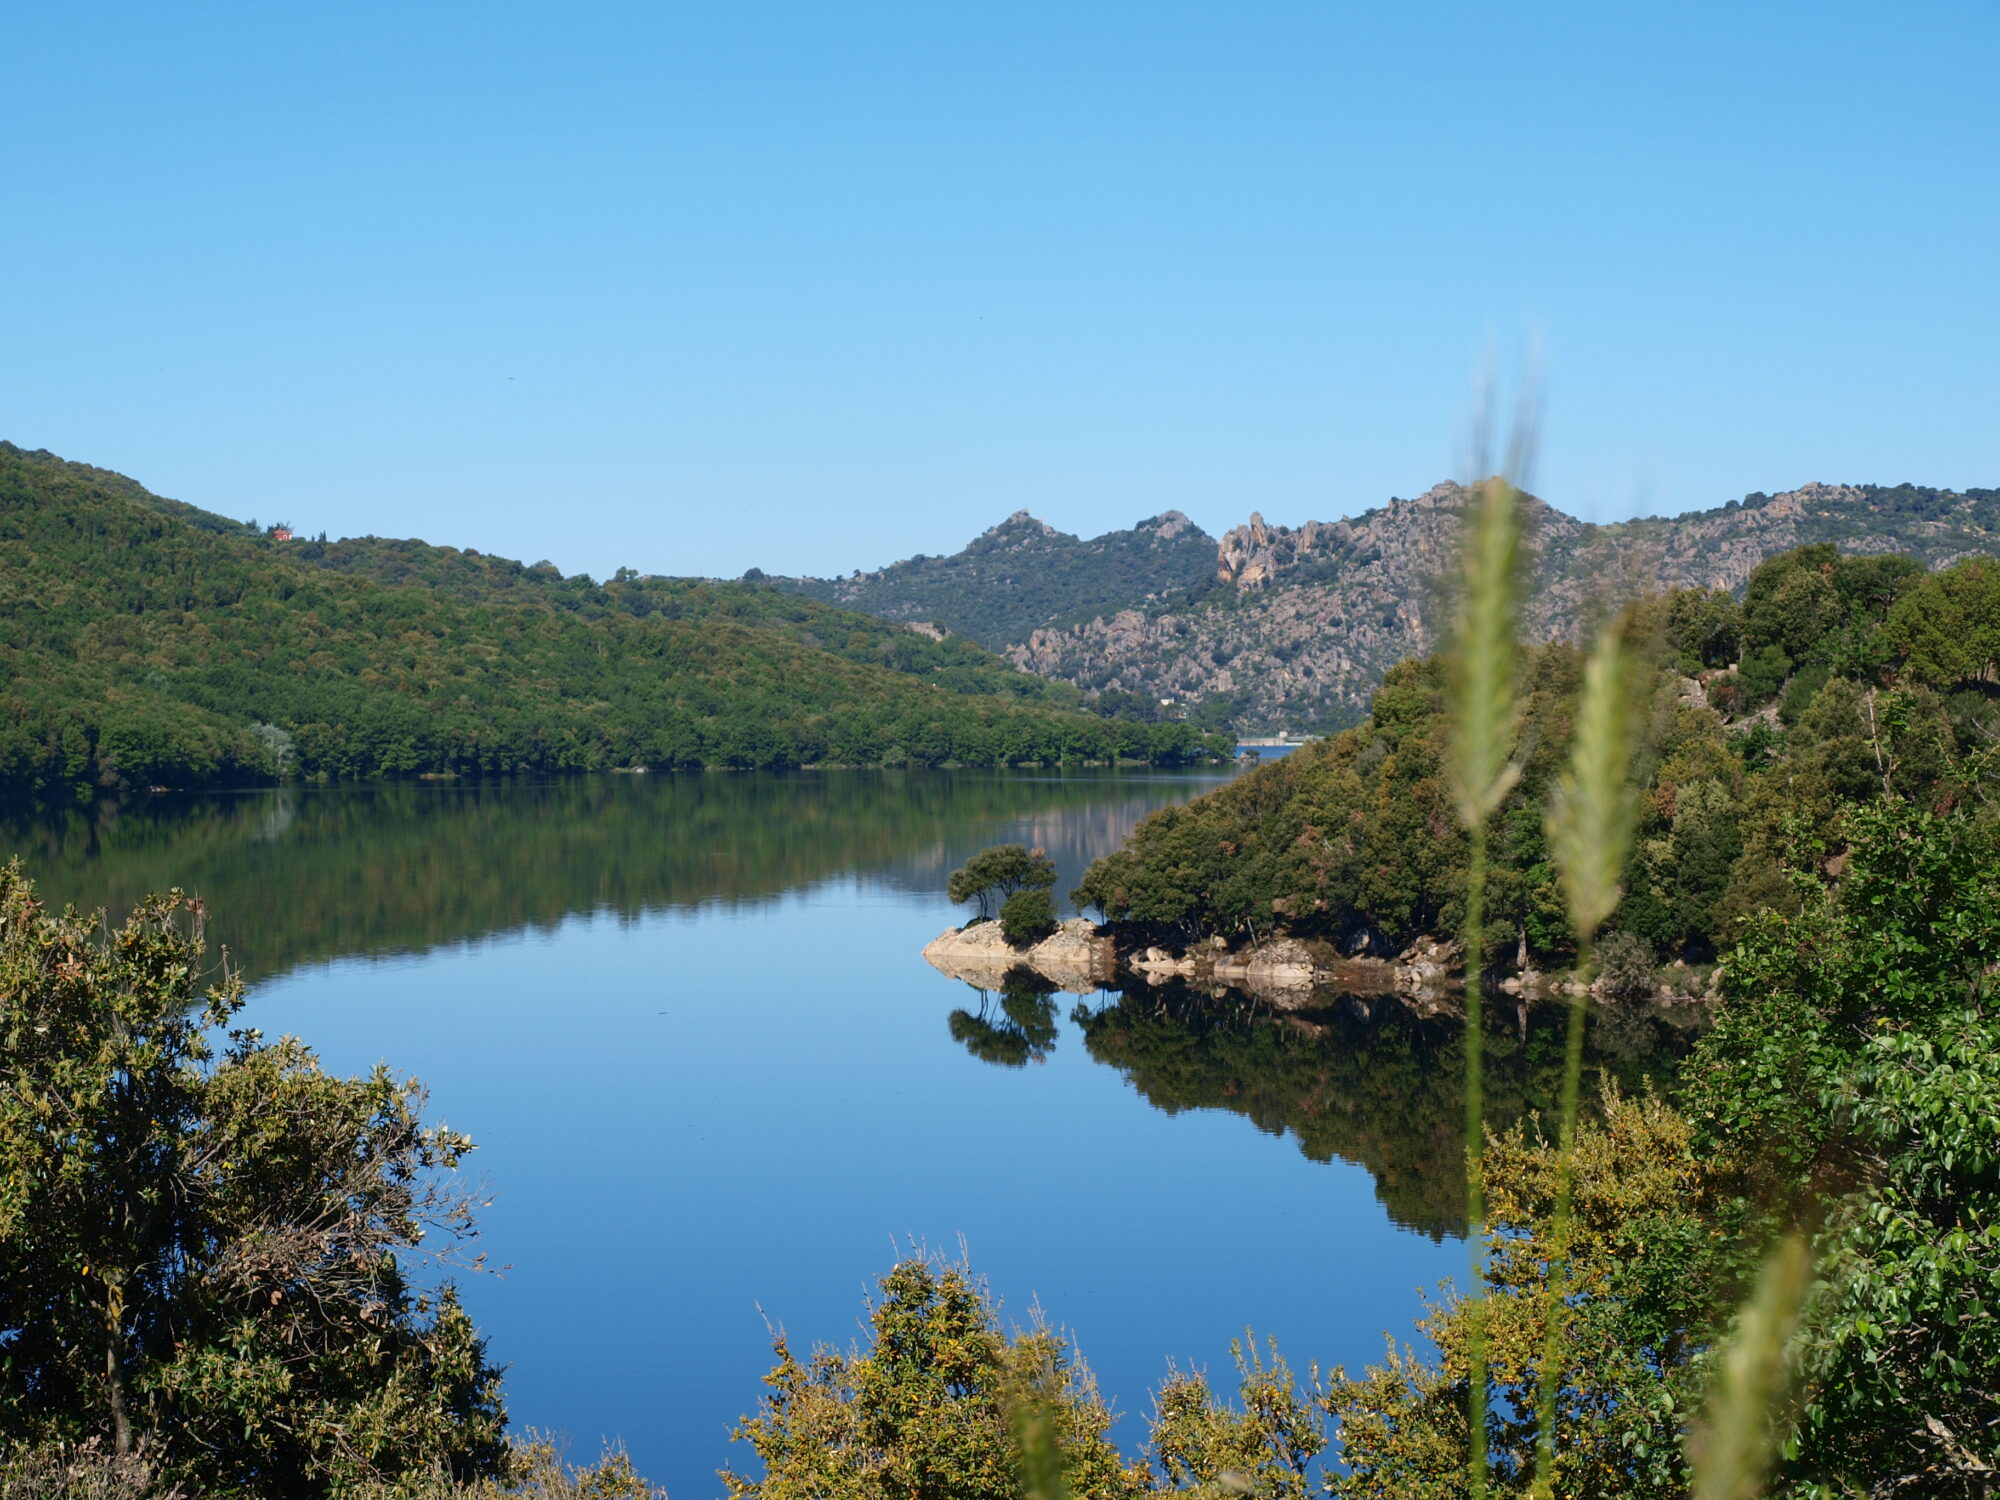 Scorcio sul lago di Gusana, lago di montagna circondato da verdeggianti boschi